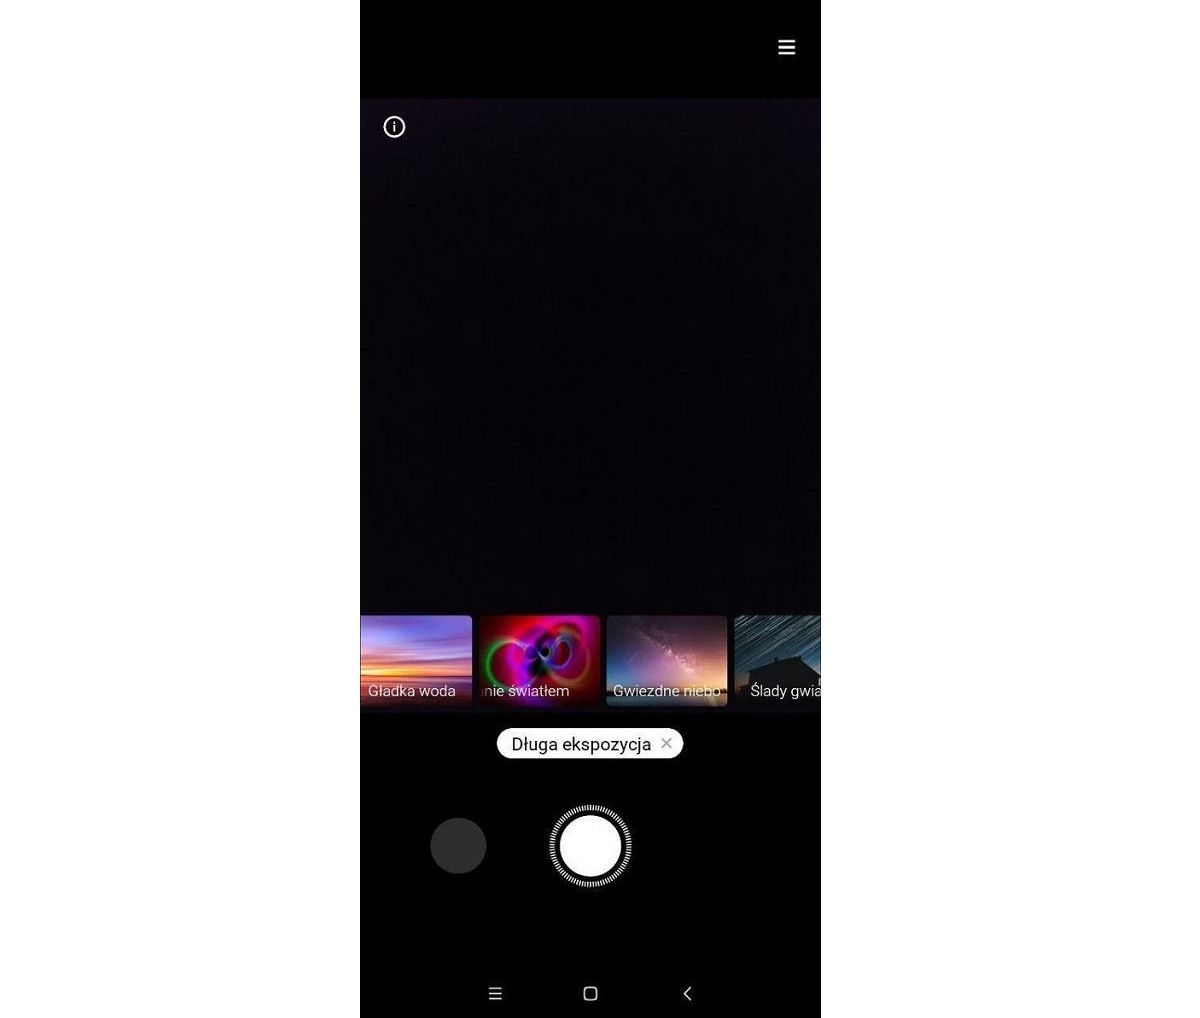 Xiaomi esta desarrollando varios modos de capturas de larga exposicion